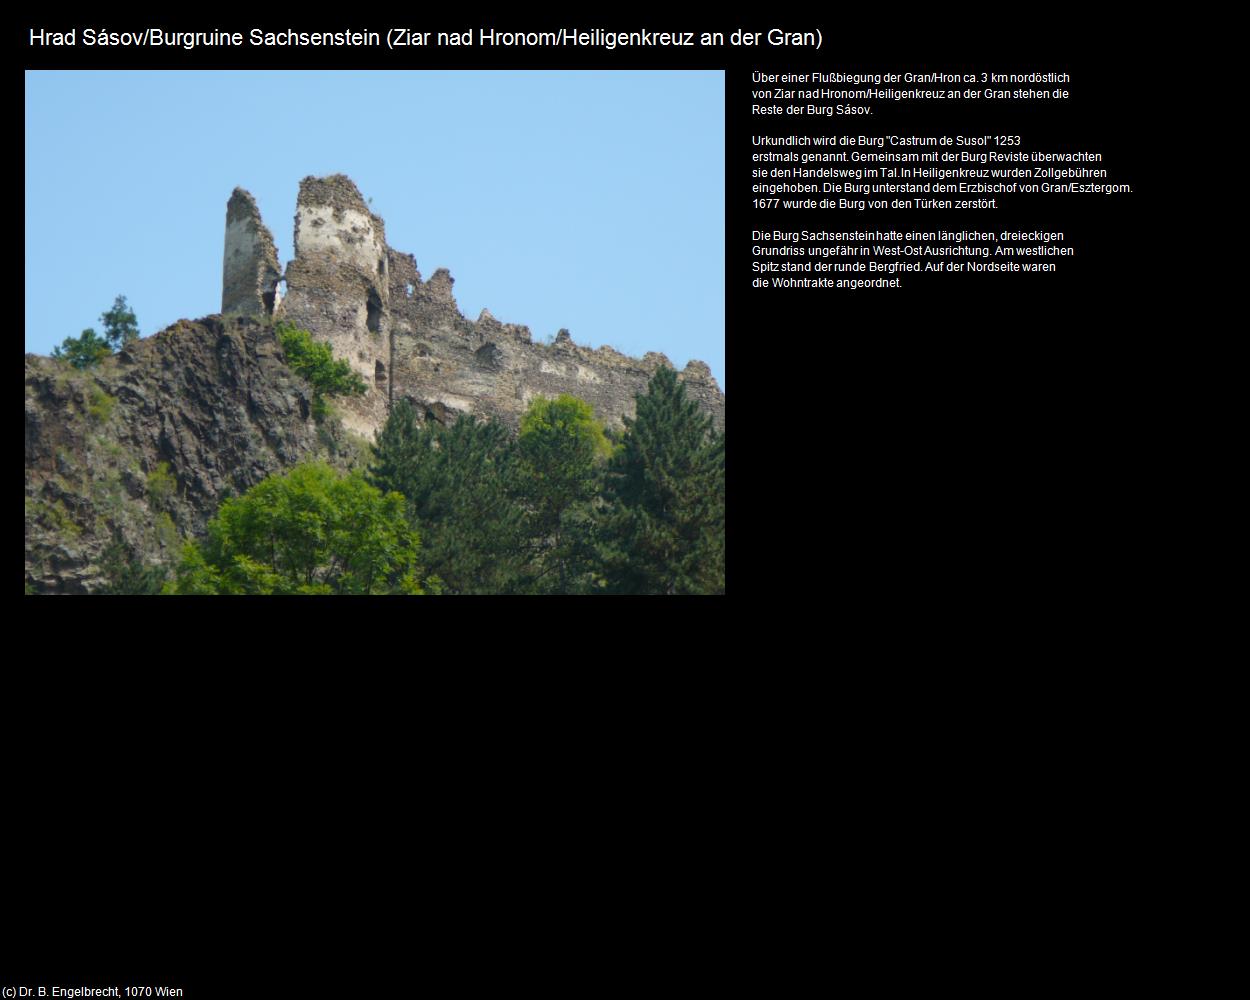 Burgruine Sachsenstein  (Ziar nad Hronom|Heiligenkreuz an der Gran) in SLOWAKEI